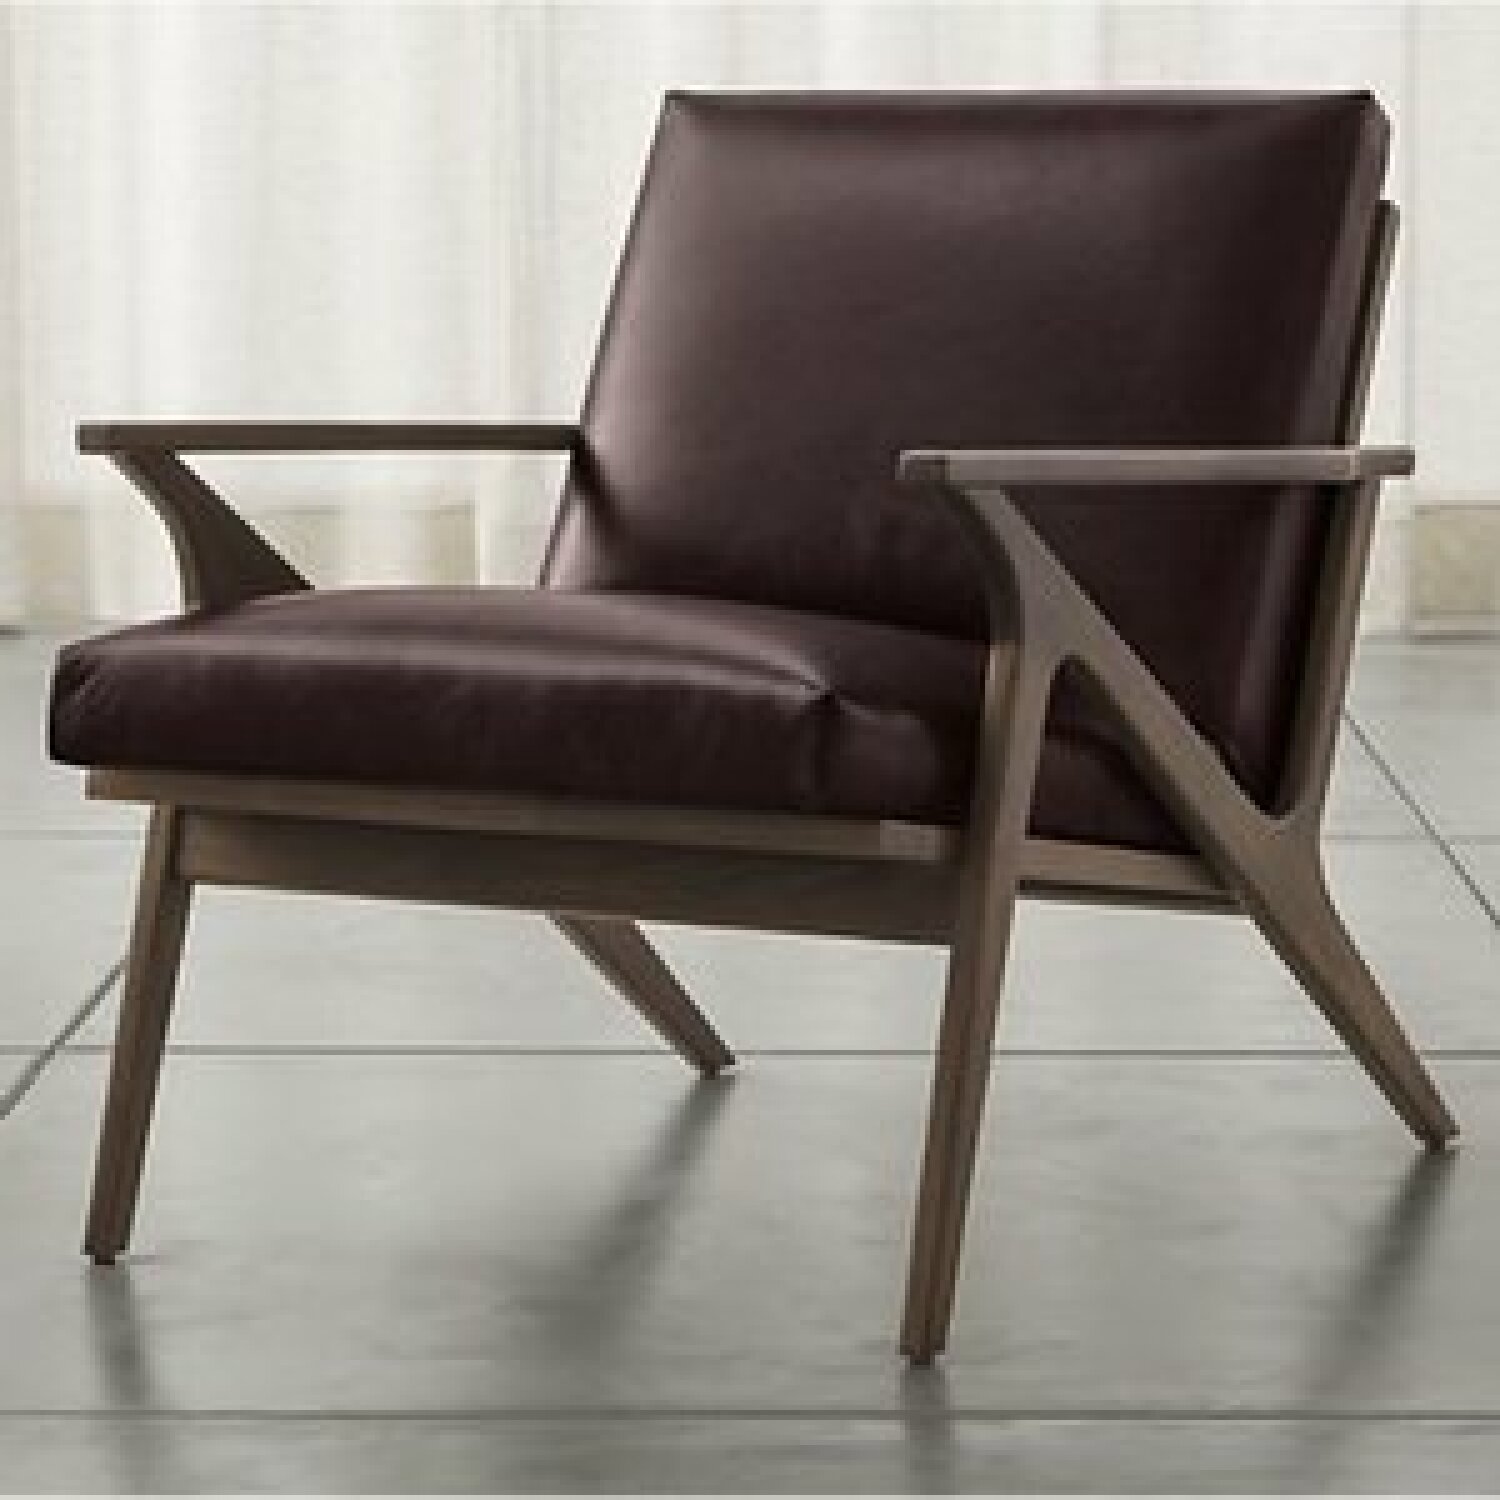 <a href="https://www.moderndigz.com/Cavett leather chair" target="_blank" rel="noopener nofollow">Cavett leather chair</a>